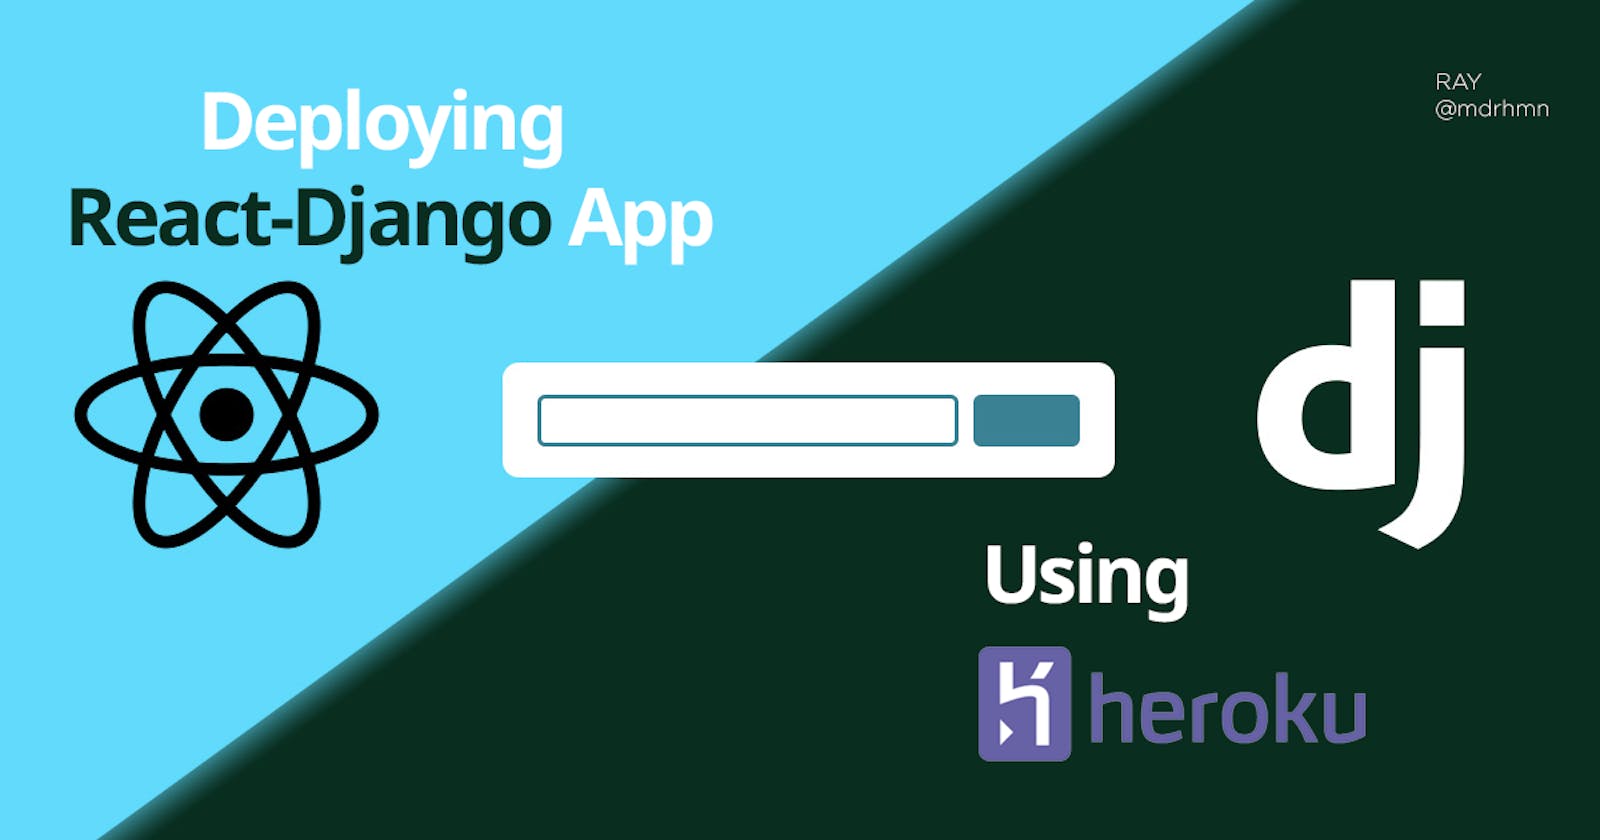 Deploying React-Django App using Heroku